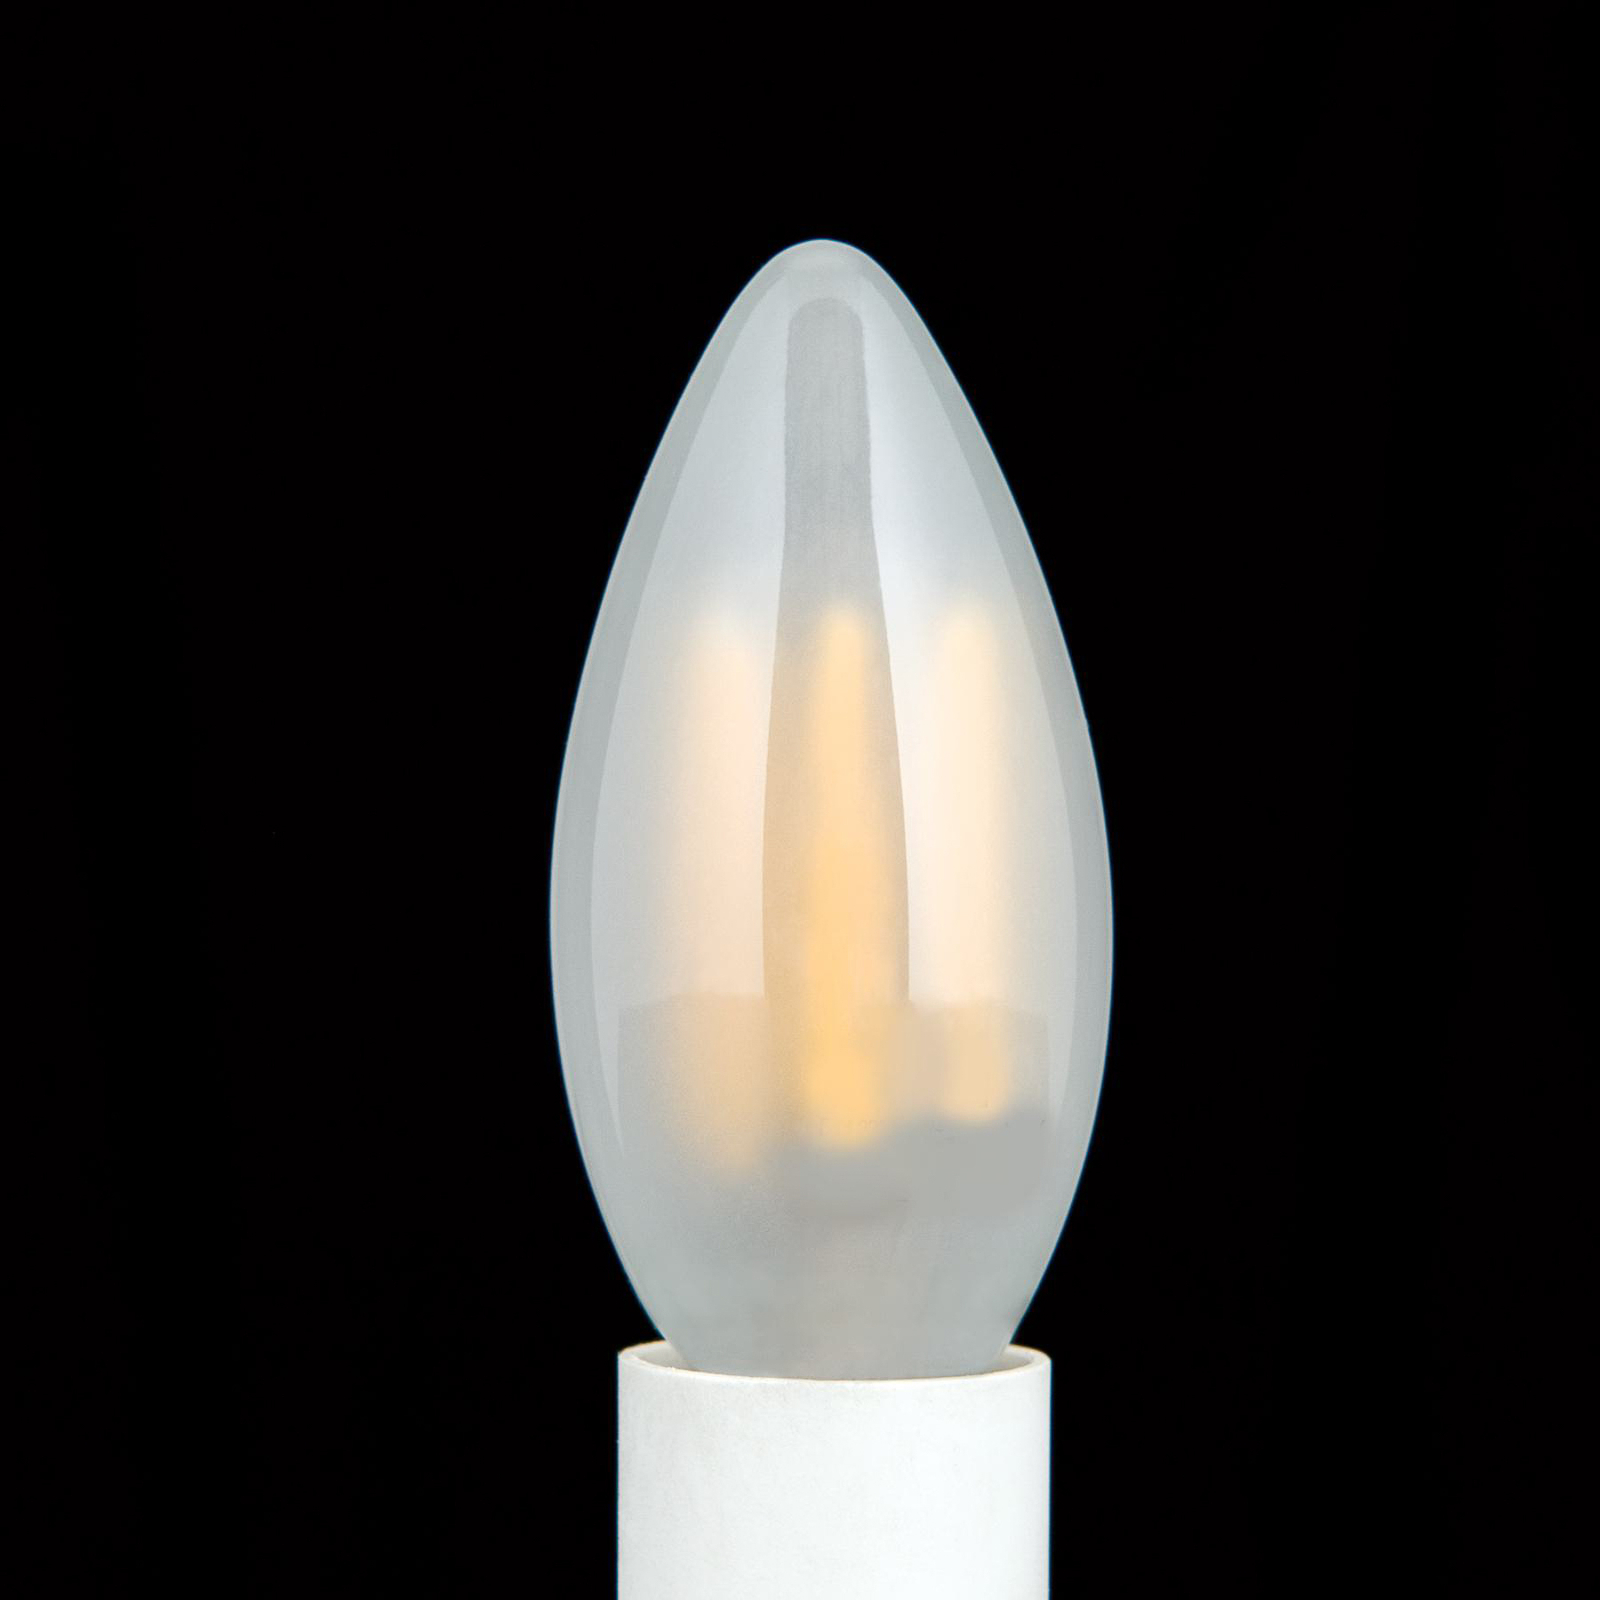 Ampoule LED E14 C35, mate, 6W, 2.700 K, 720 lm, intensité variable